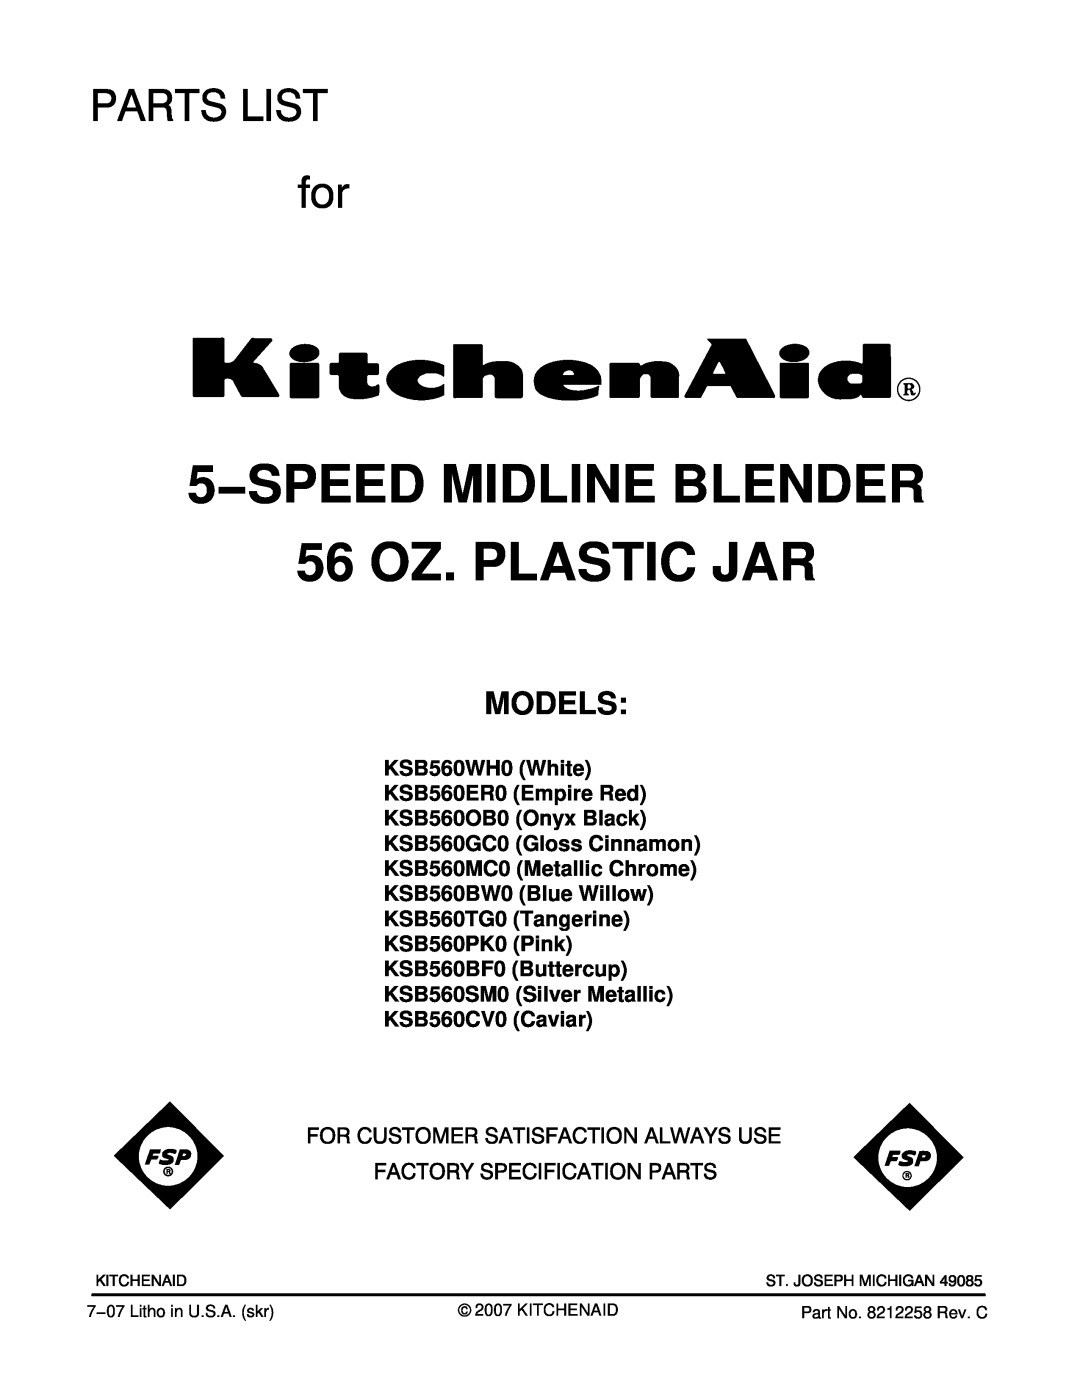 KitchenAid KSB560GC0 manual Models, KSB560WH0 White KSB560ER0 Empire Red KSB560OB0 Onyx Black, 5−SPEED MIDLINE BLENDER 